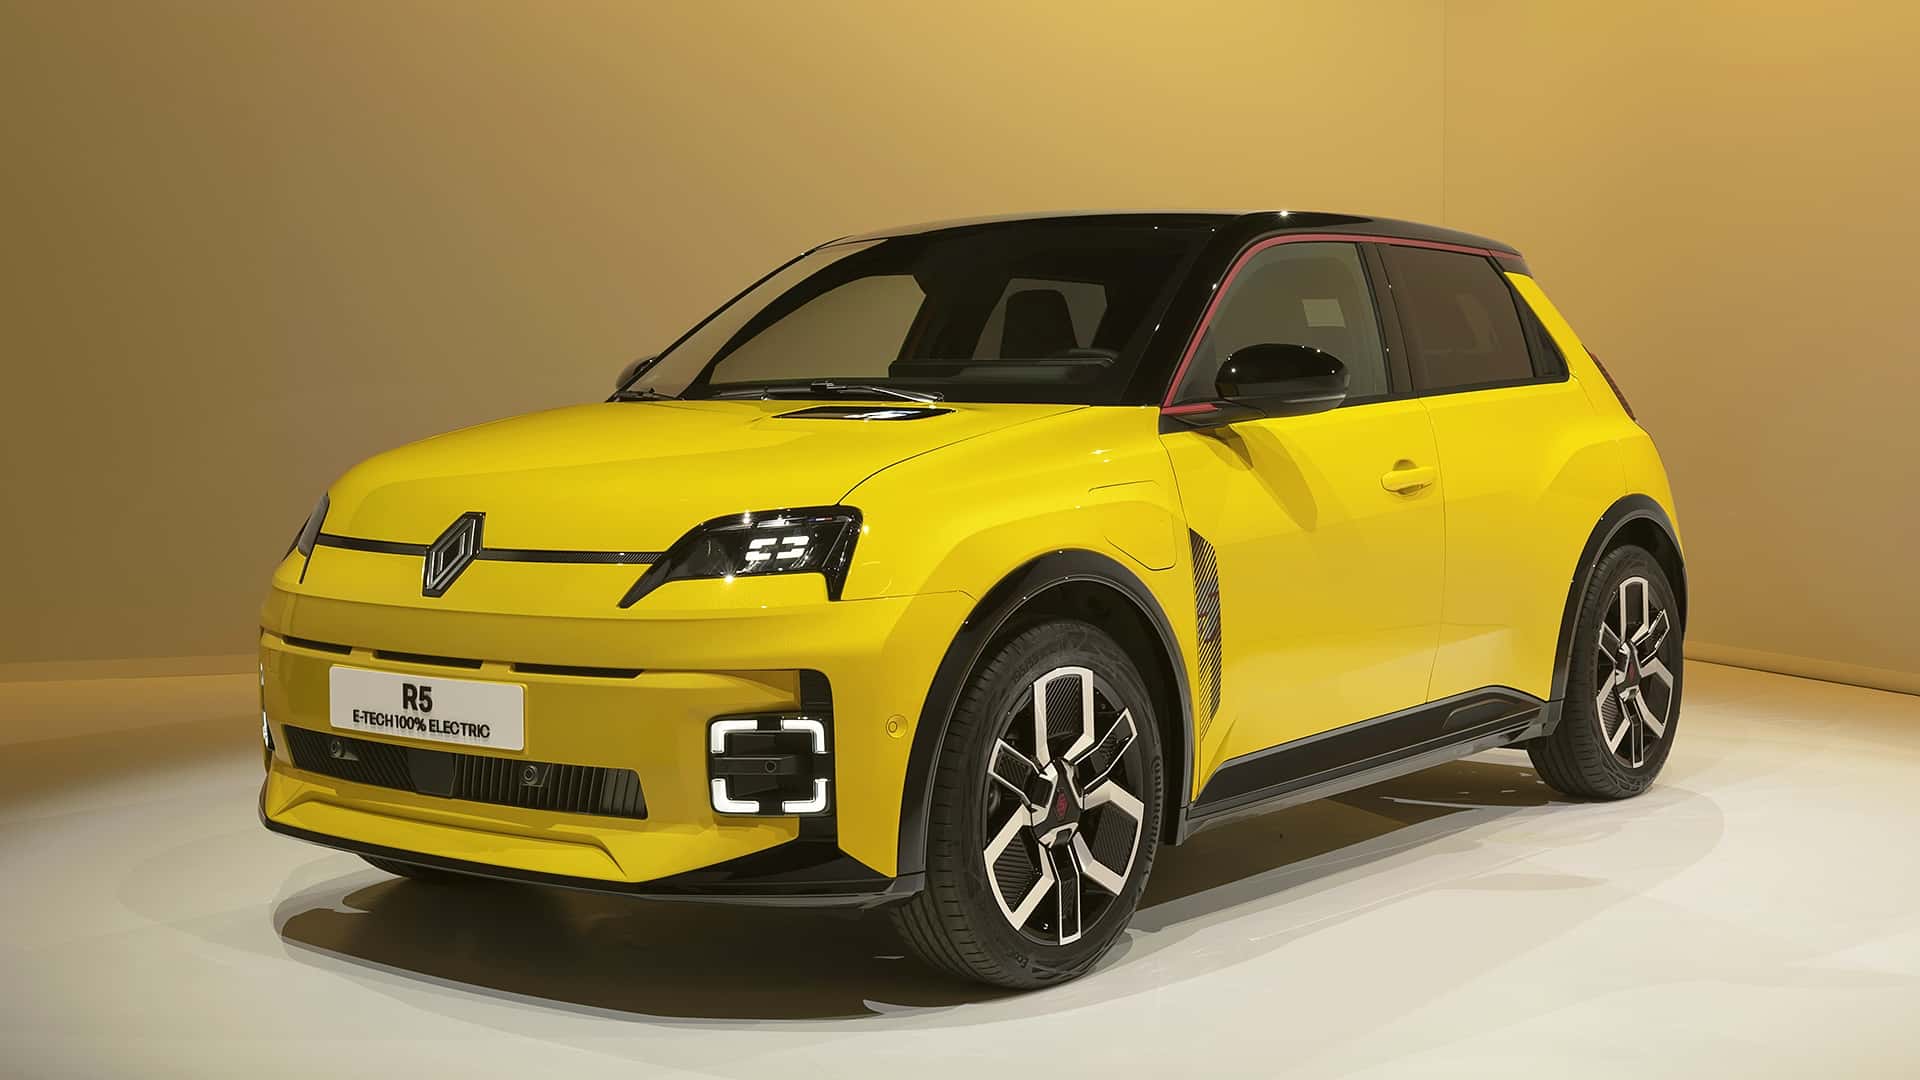 Новий Renault 5 представлено офіційно